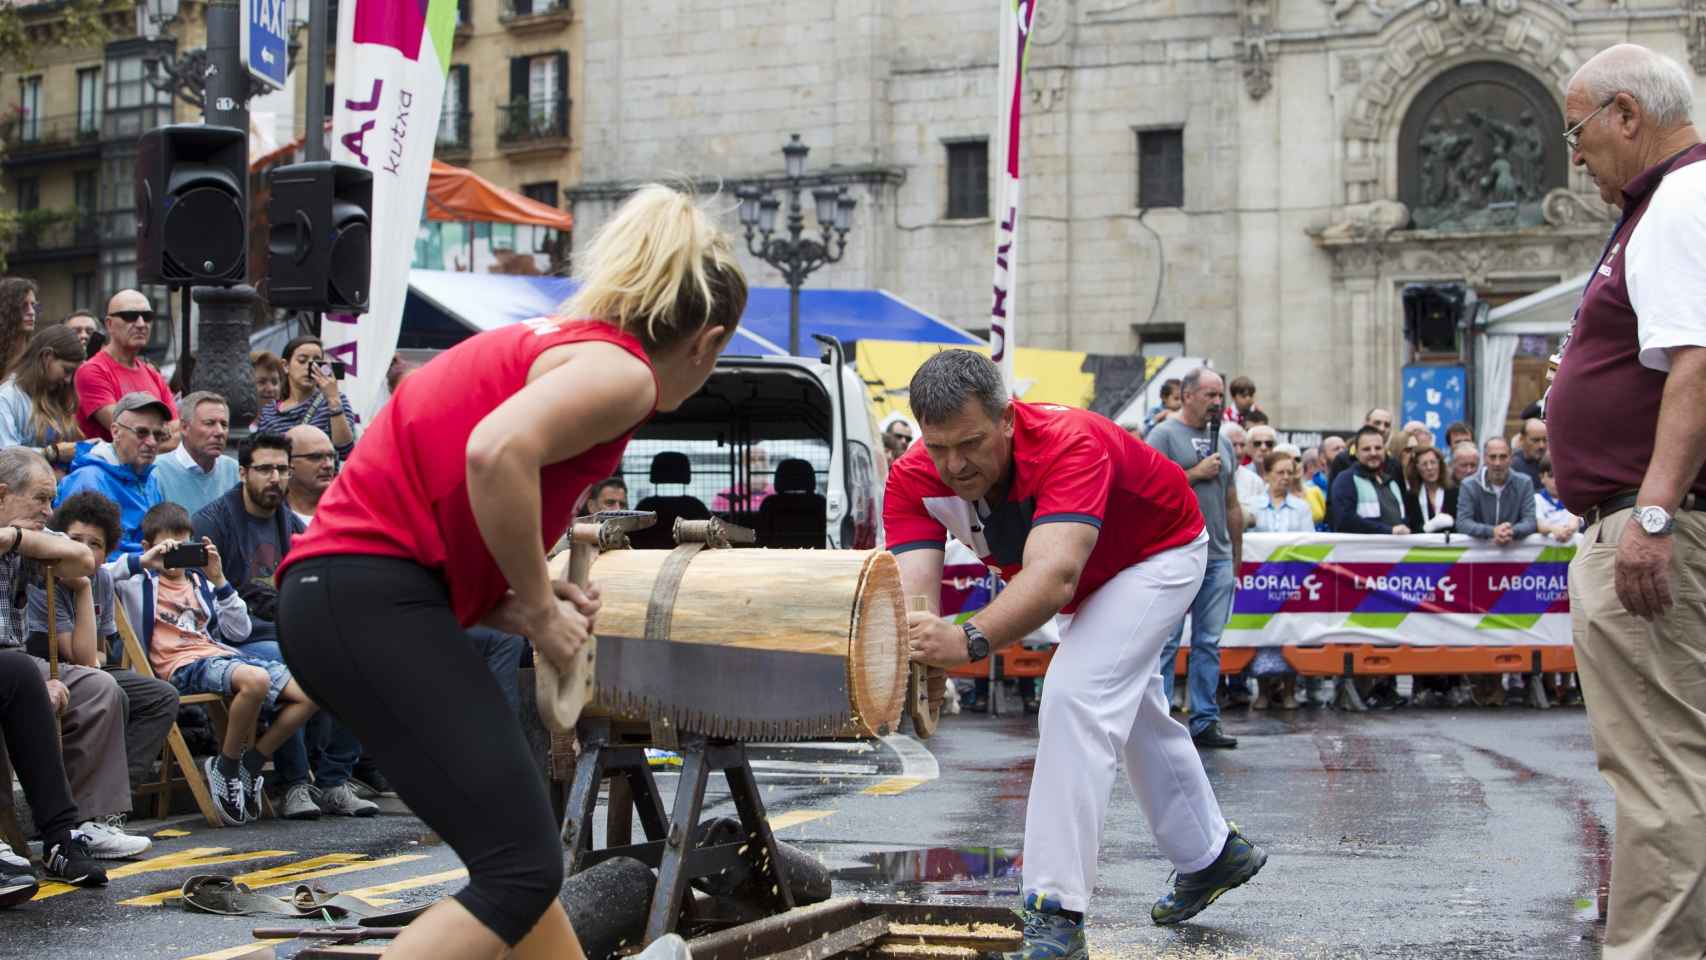 Juegos y deportes vascos durante la Aste Nagusia de Bilbao. / Ayuntamiento de Bilbao